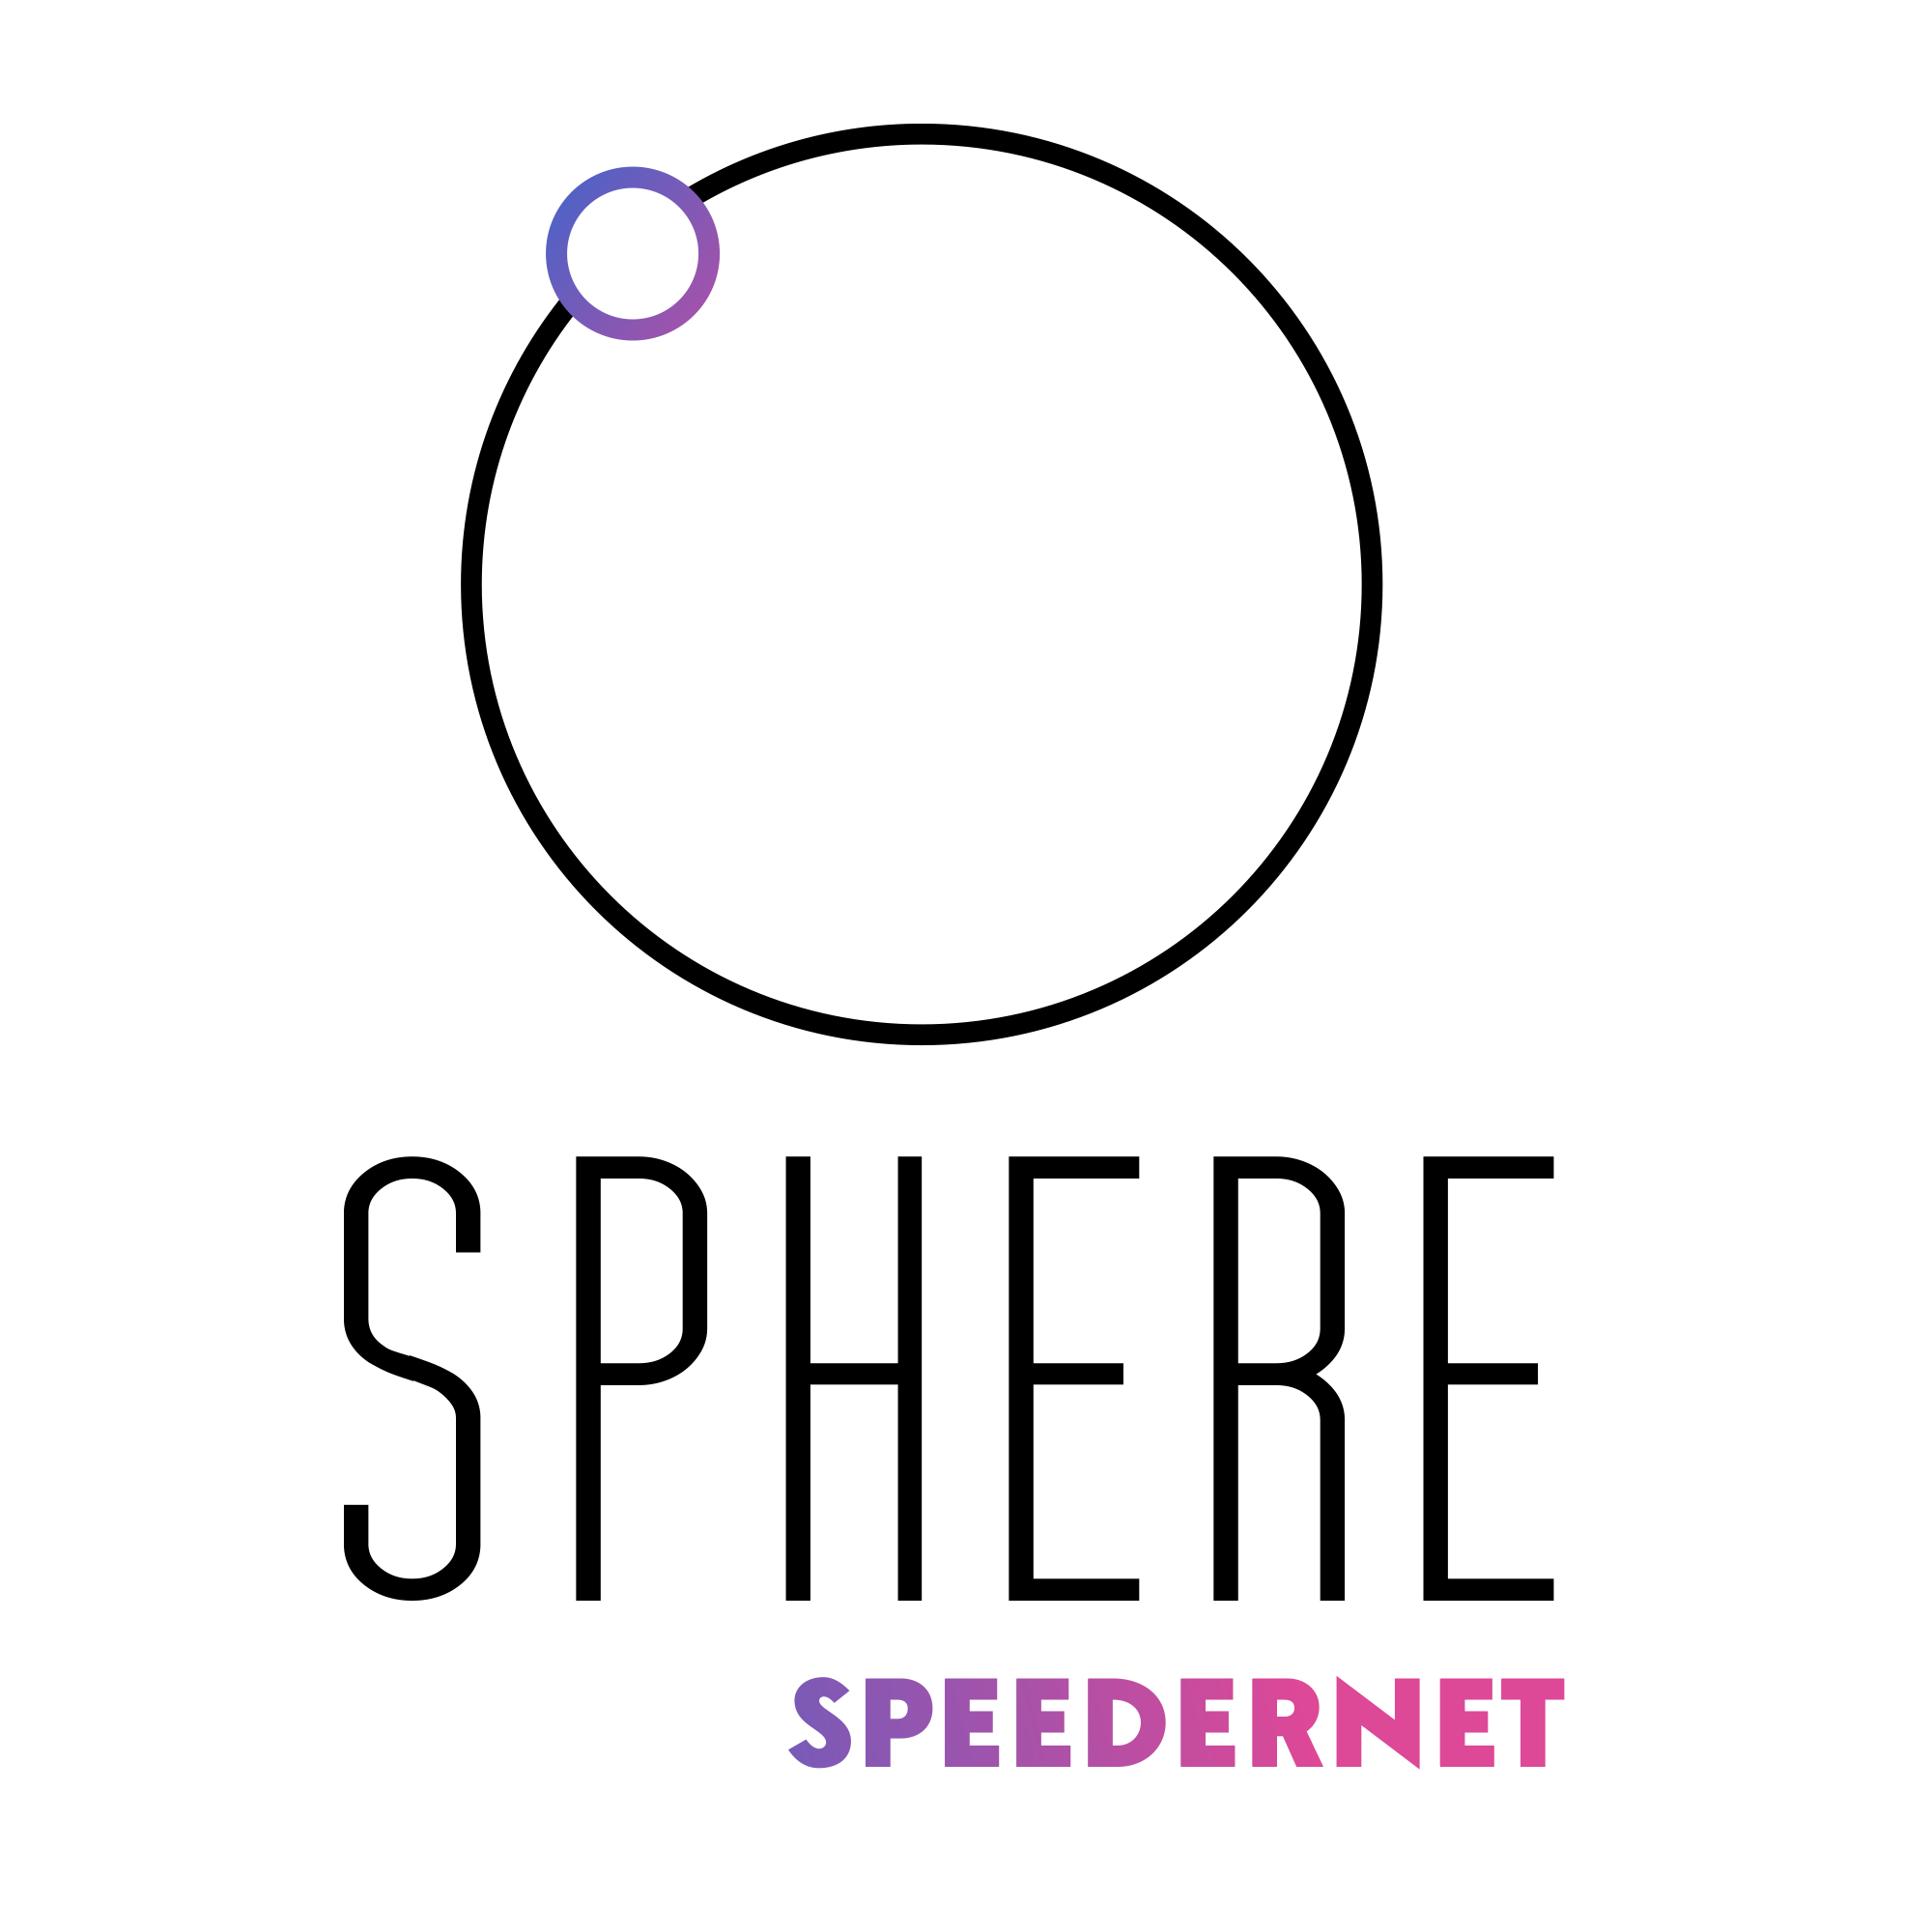 Sphere Speedernet